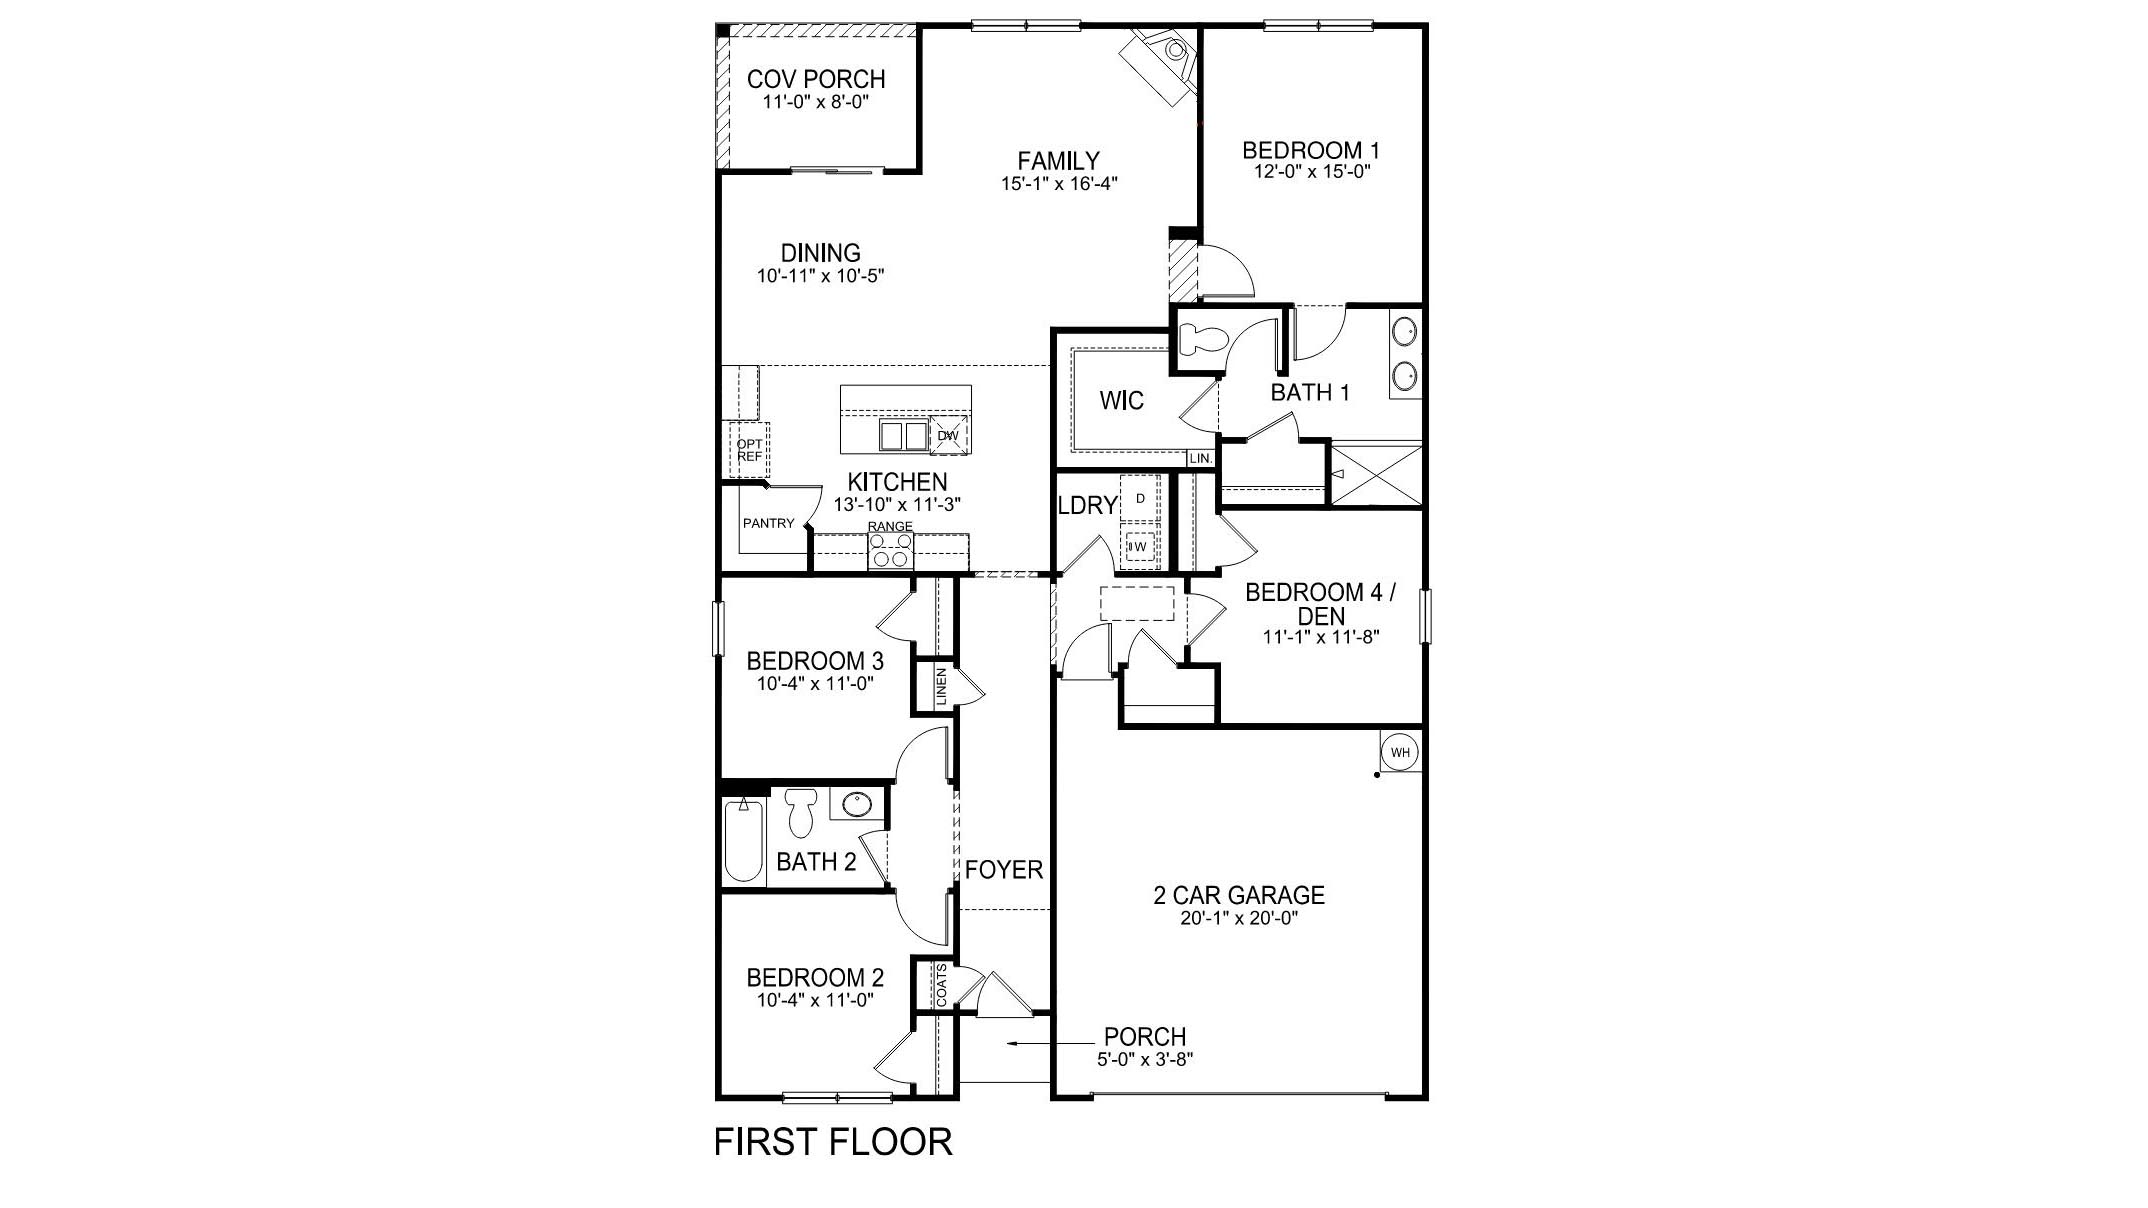 Cali first floor plan